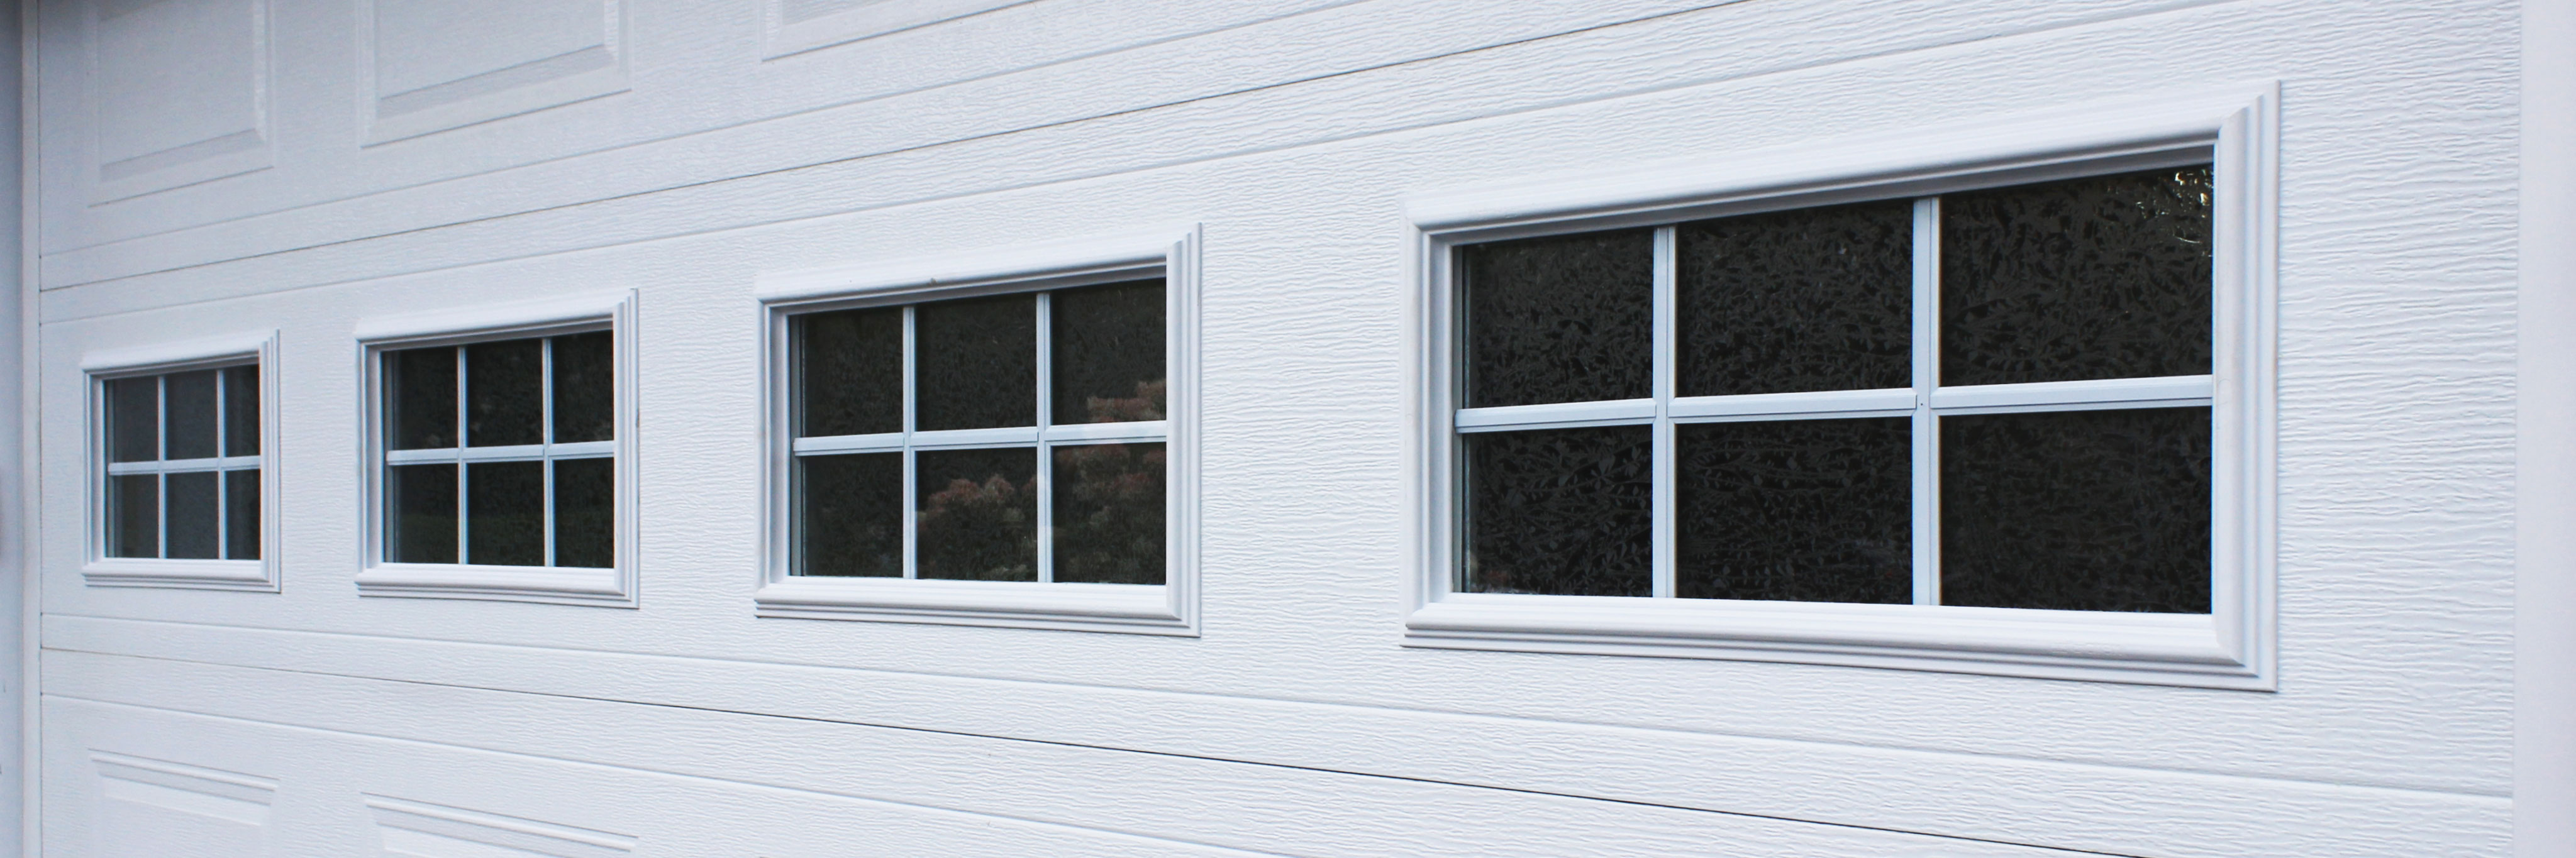 Thermal Windows To Your Garage Door, How To Repair Garage Door Window Inserts